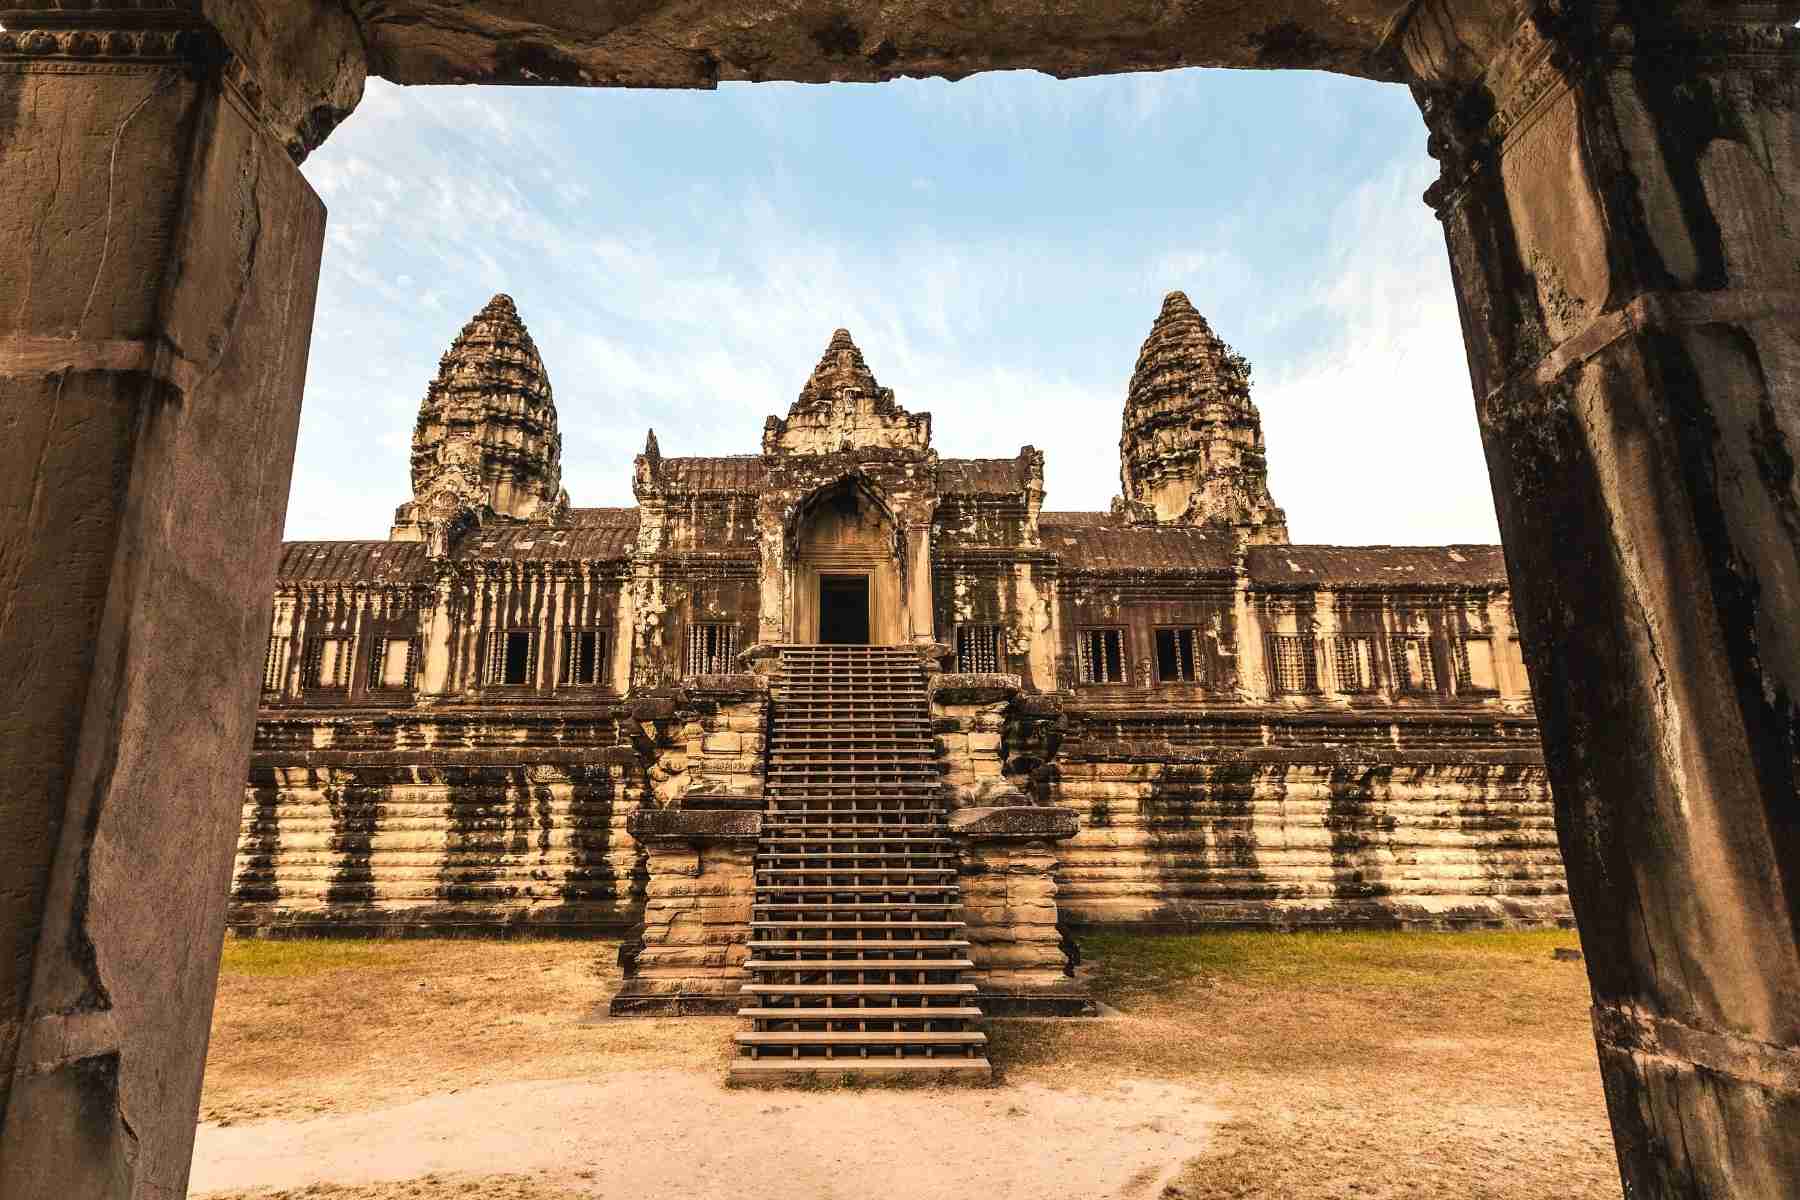 Temple in Angkor Wat, Siem Reap